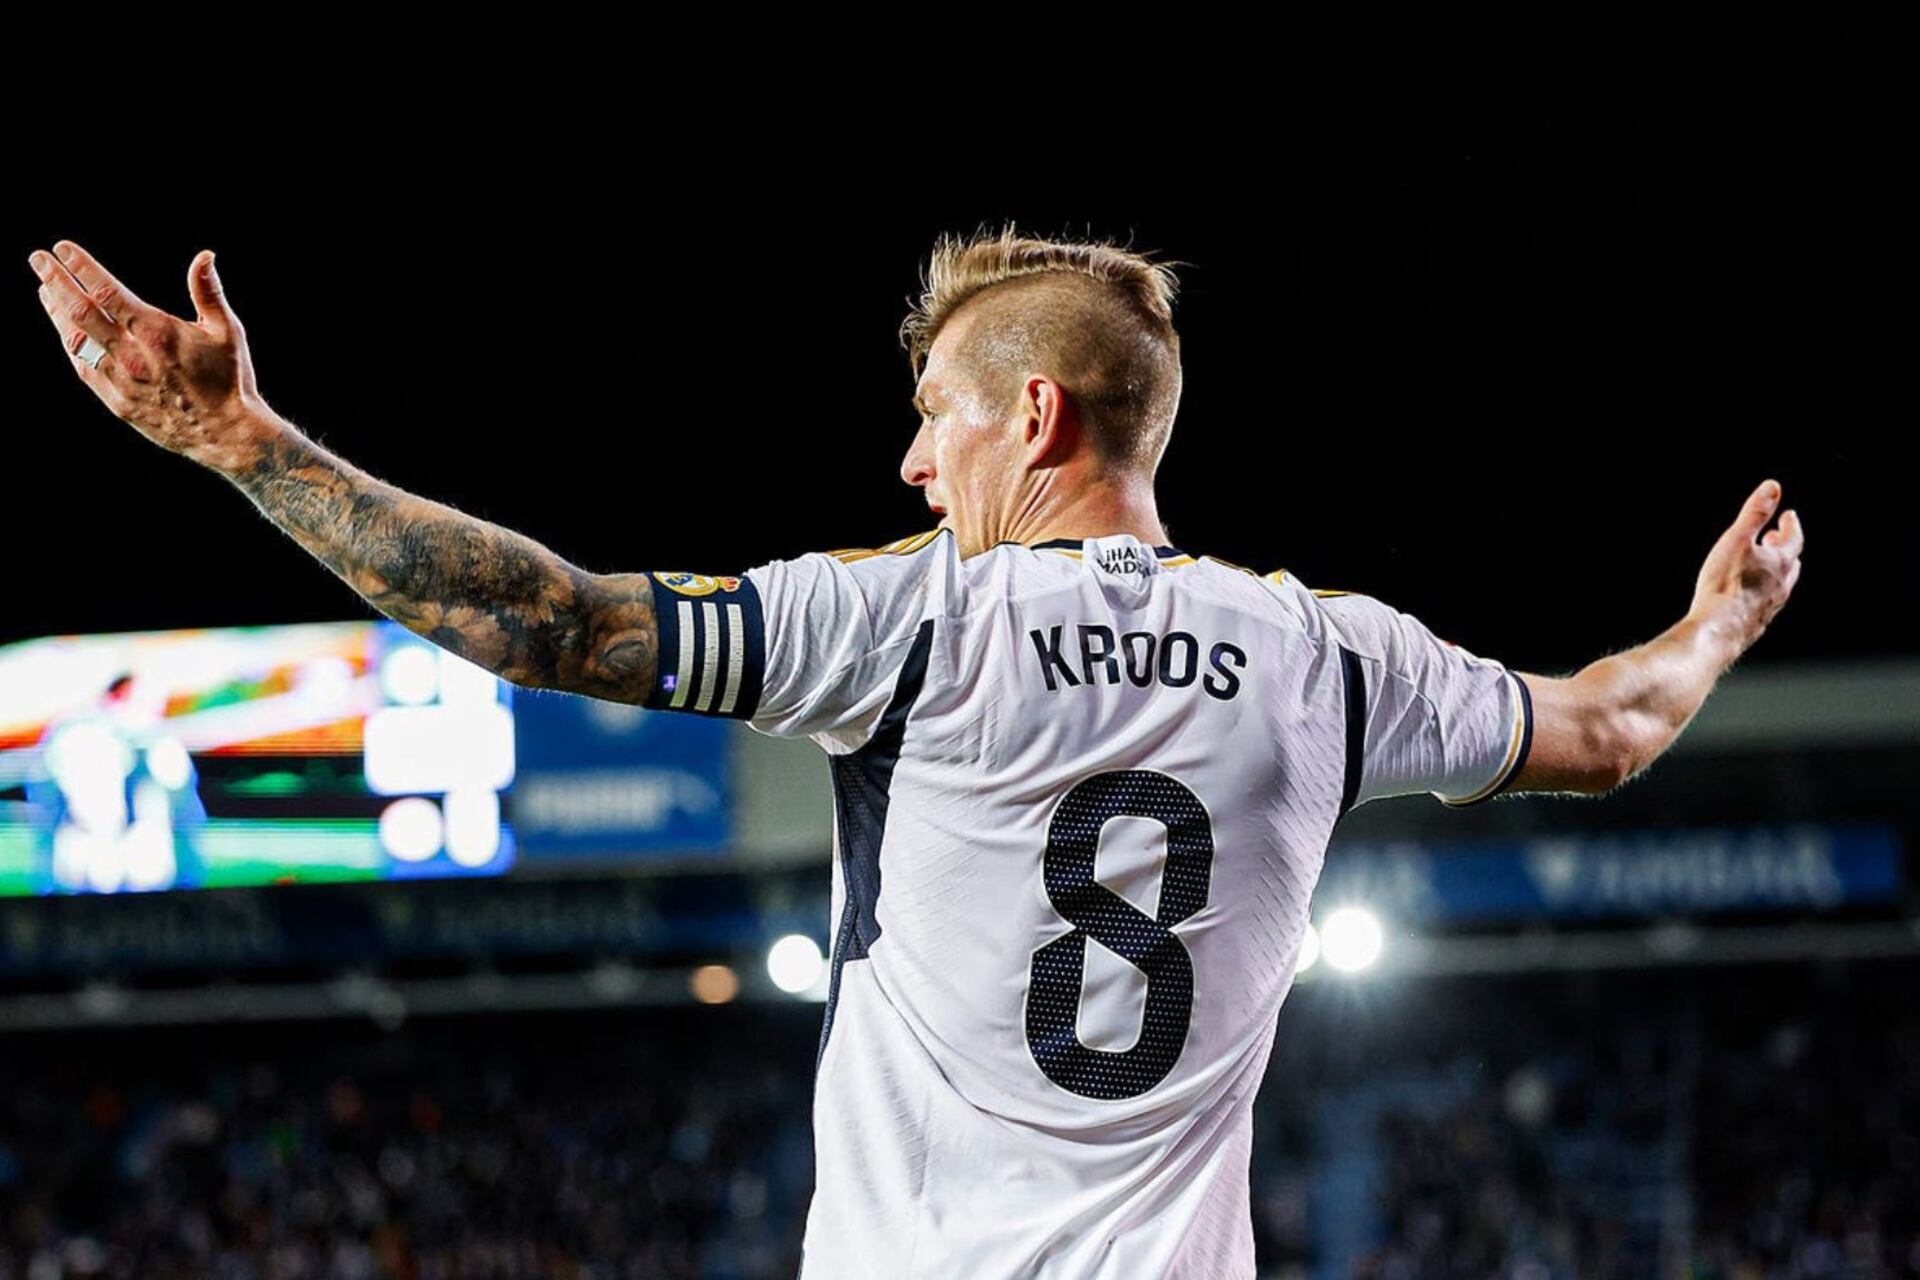 Tras anunciar su retiro, el jugador del Real Madrid que tomará el número de Kroos